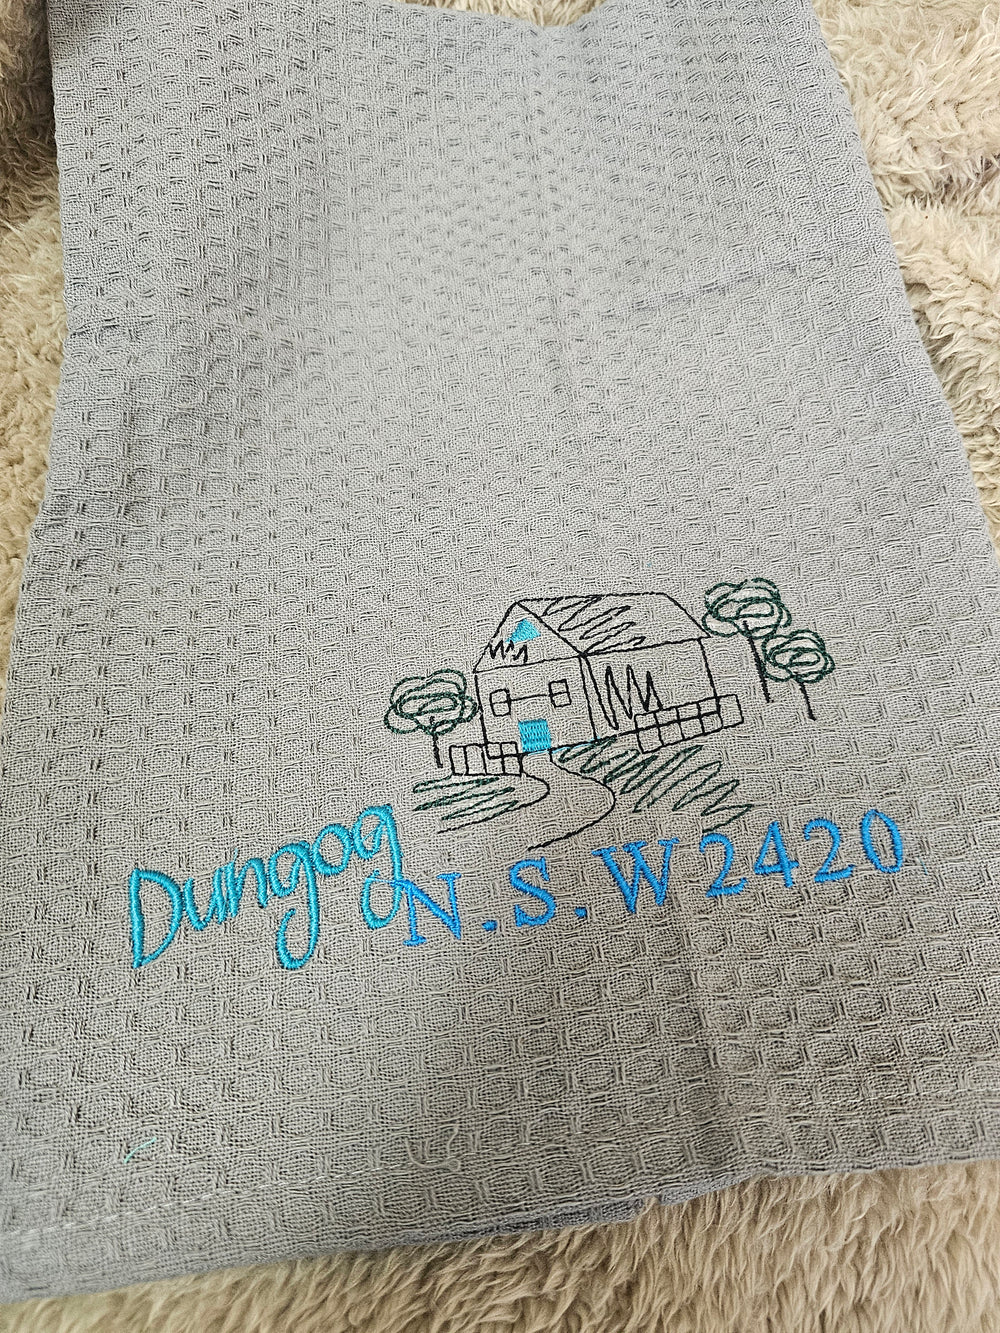 1431648 Embroidered Tea Towel - Dungog | Multi